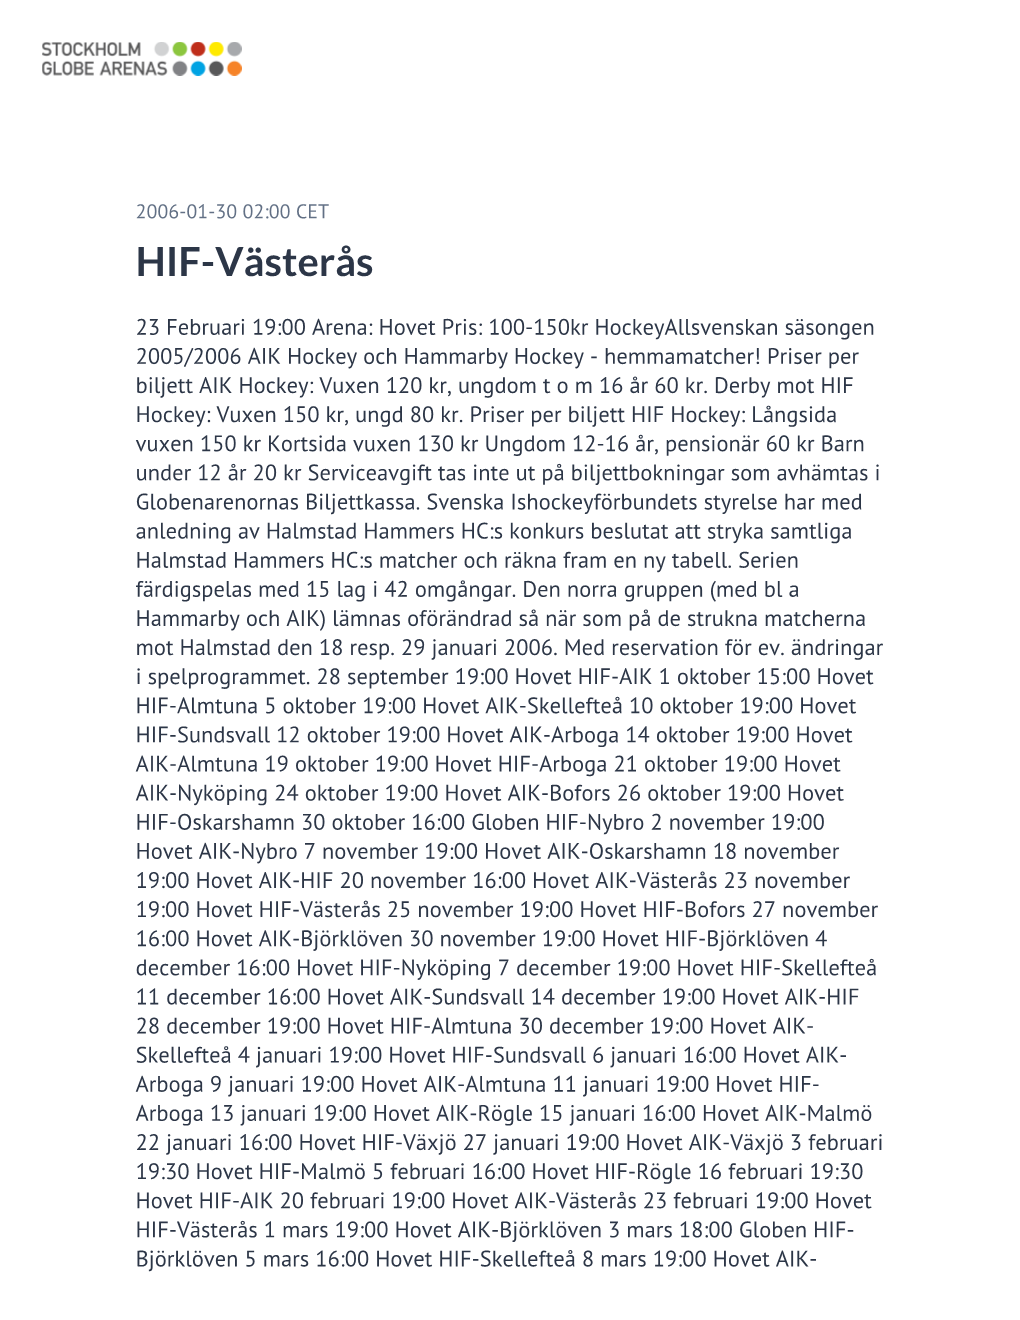 HIF-Västerås